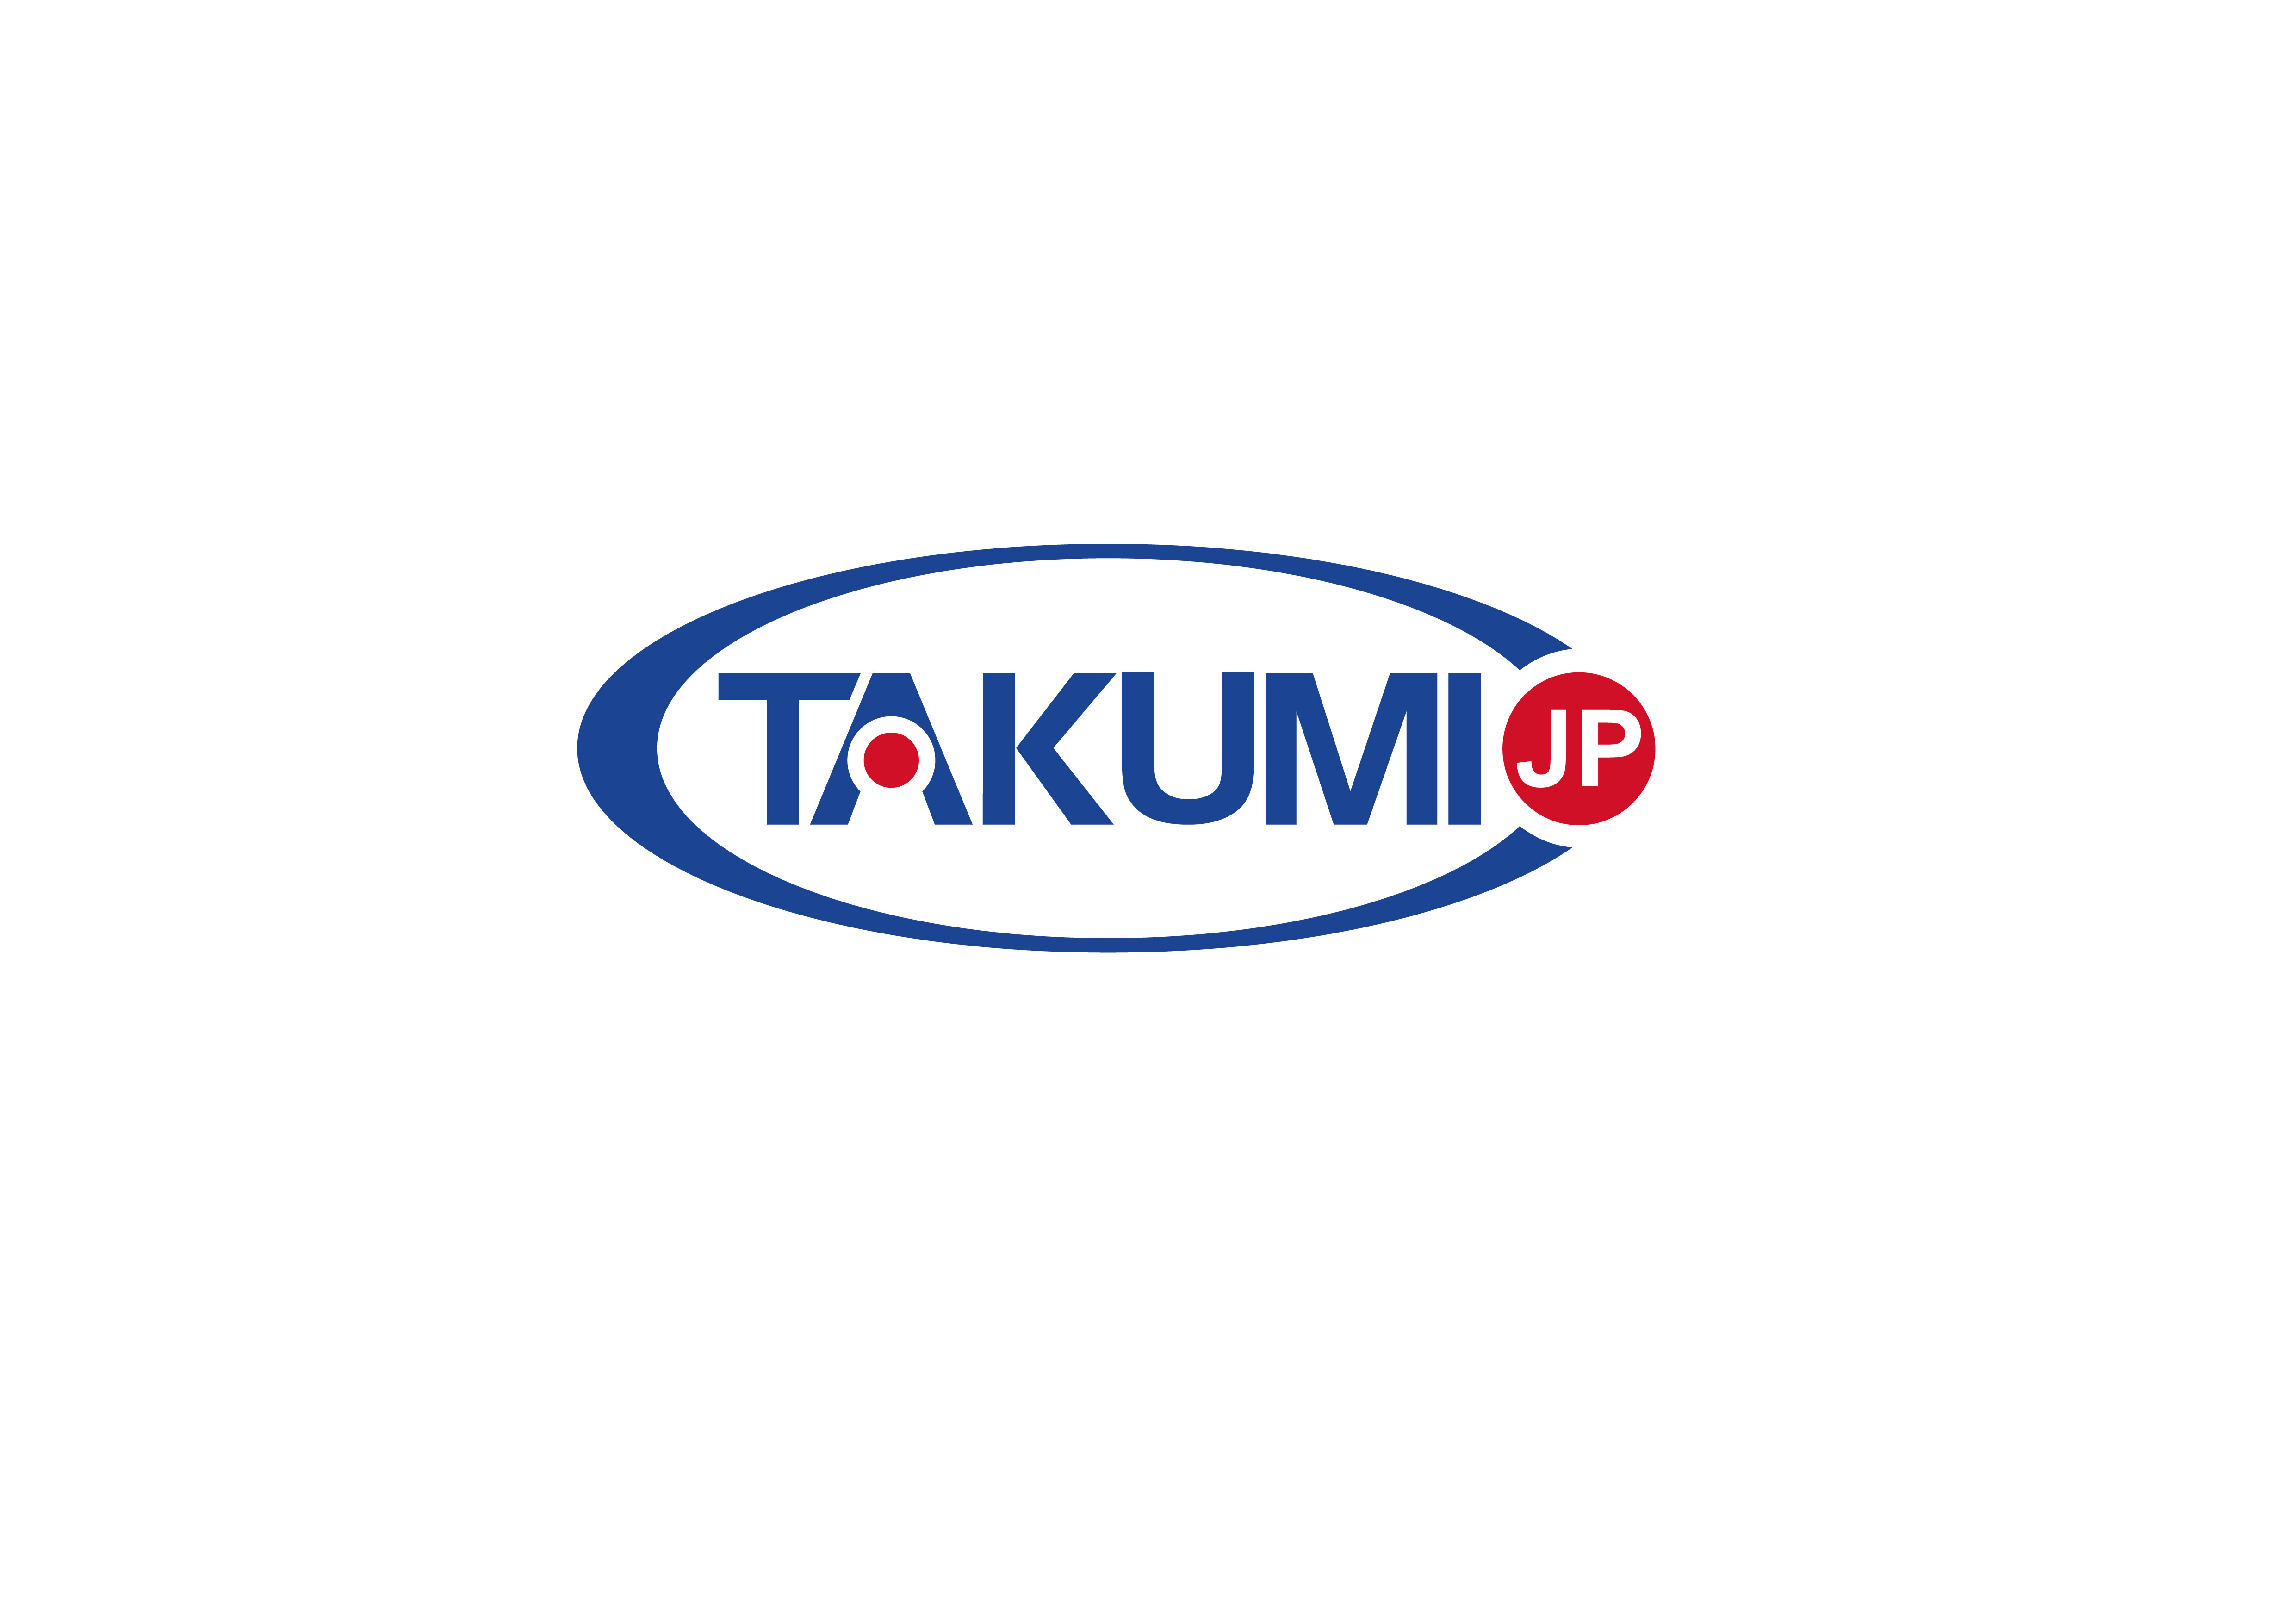 Laatste bedrijfscasus over Takumi zoekt nu een globale exclusieve distributeur.